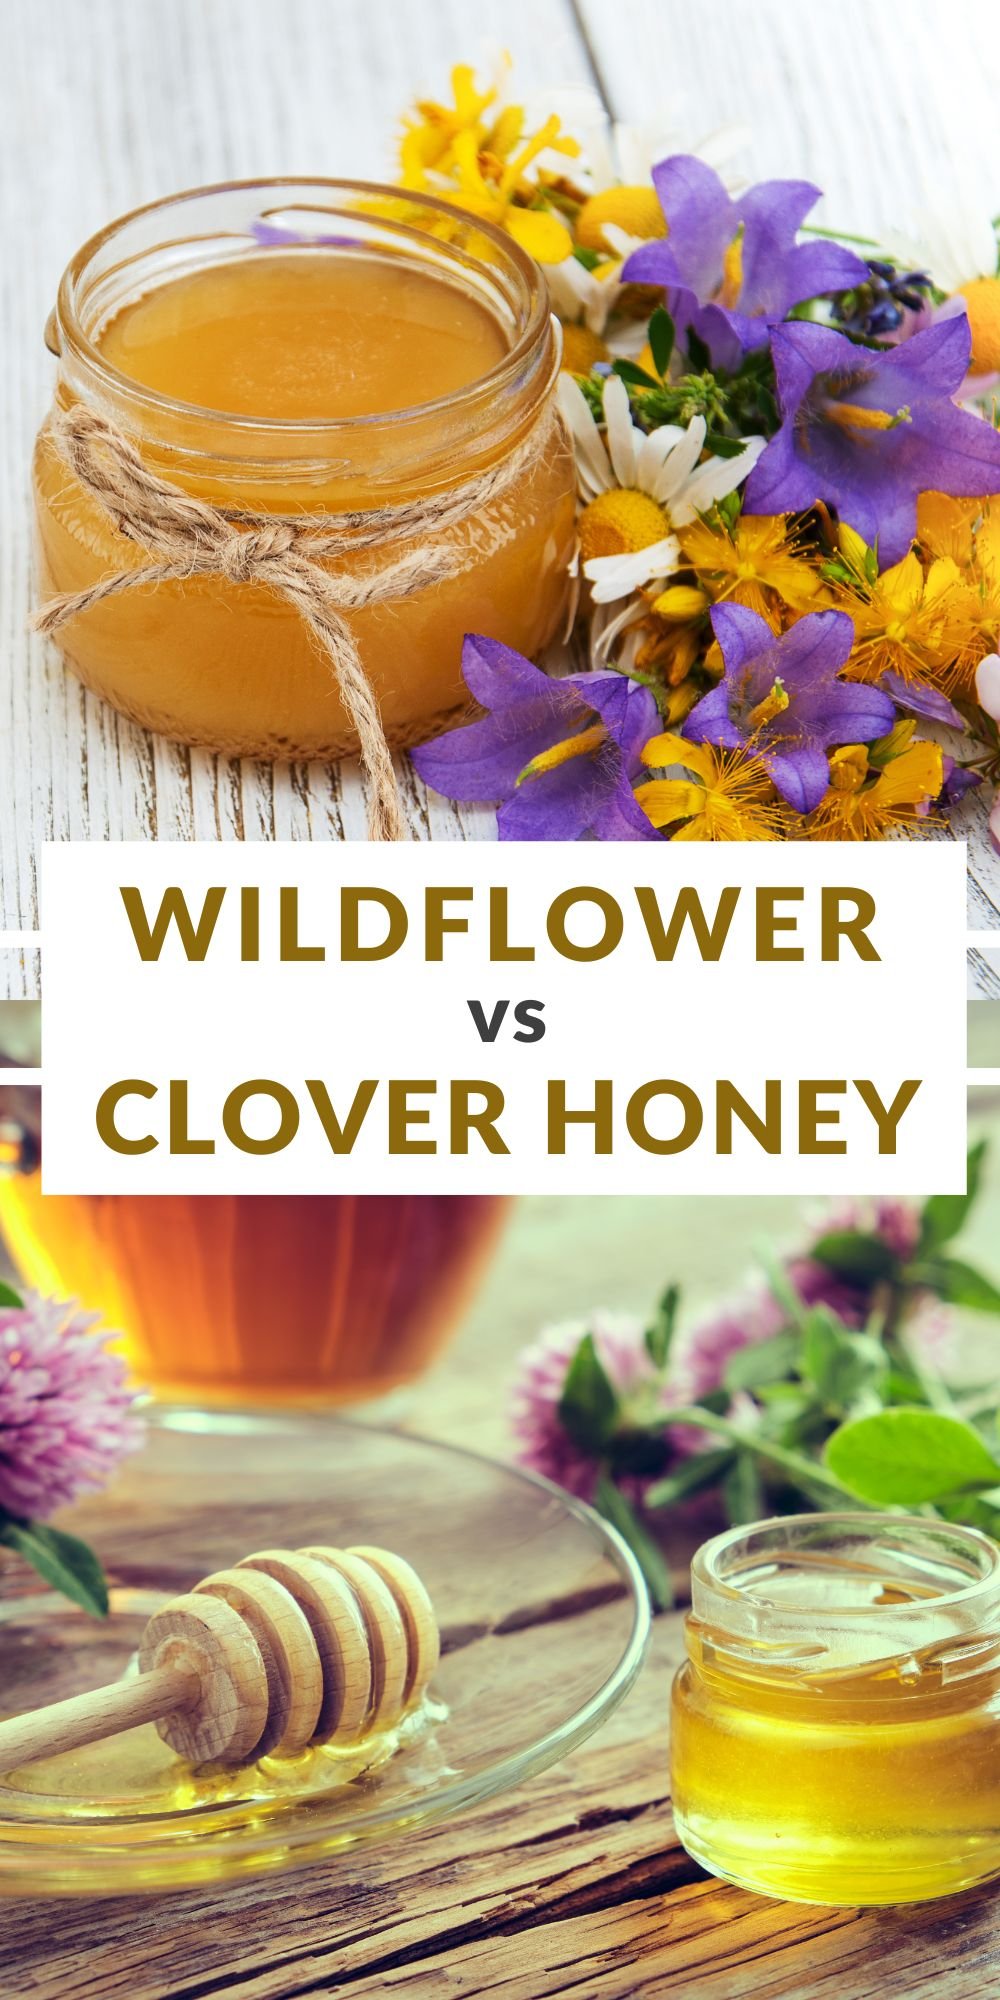 Wildflower Honey vs Clover Honey